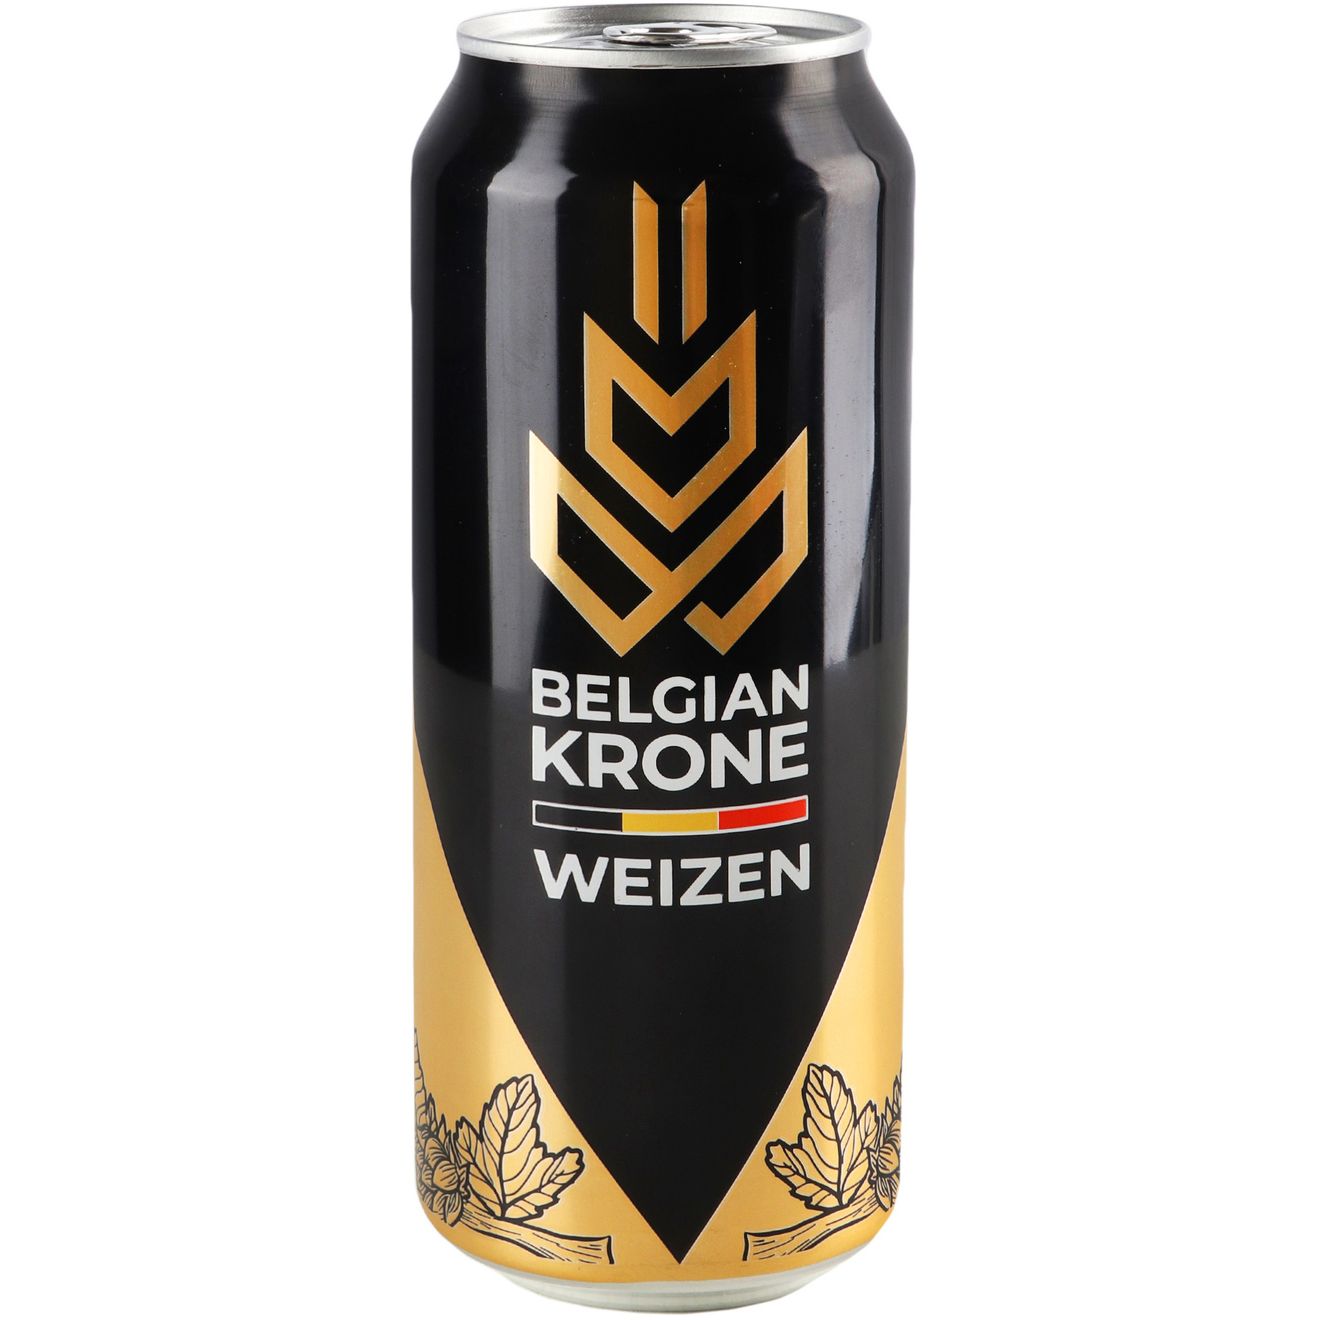 Пиво Belgian Krone Weizen, светлое, нефильтрованное, 5%, ж/б, 0,5 л - фото 2